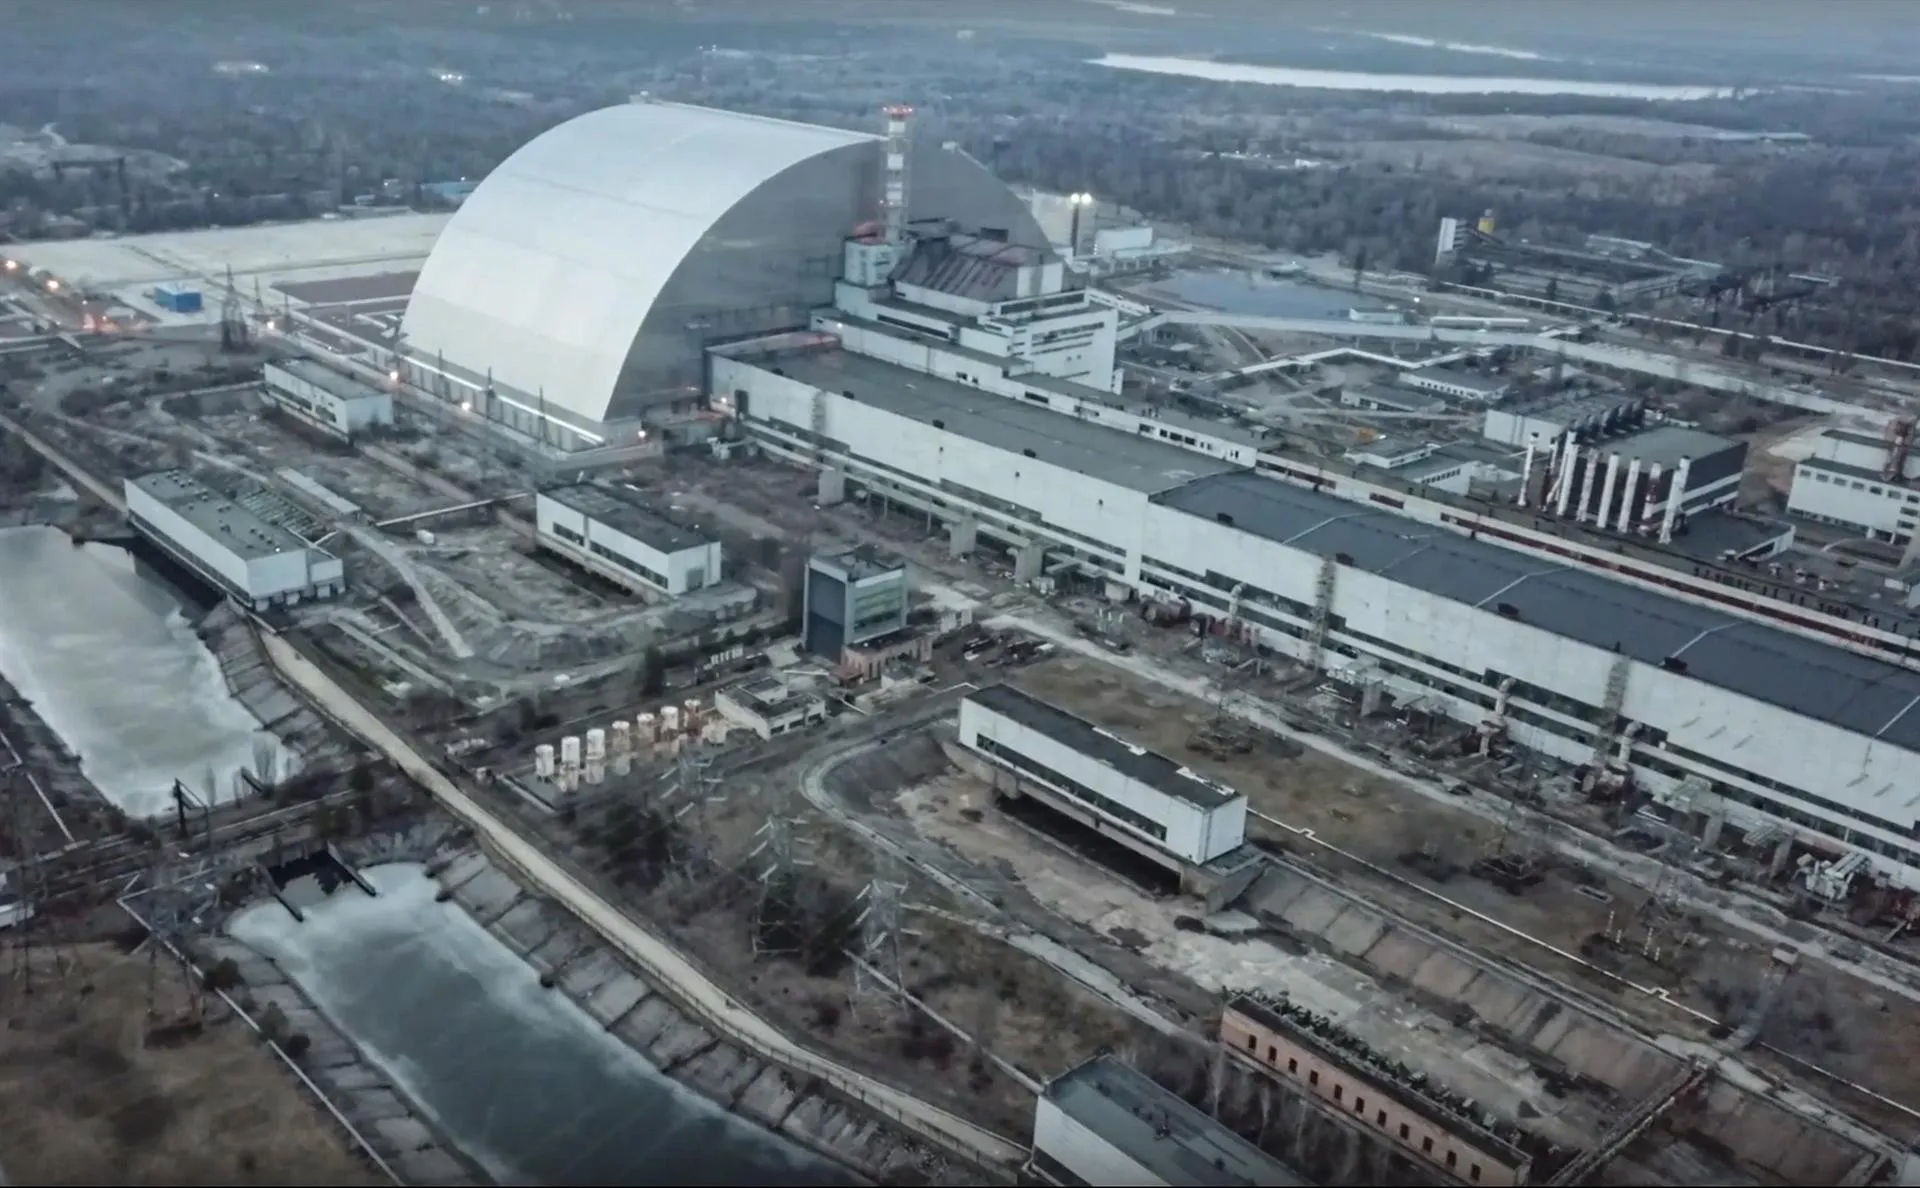 Tropas rusas abandonan central nuclear de Chernóbil, dice regulador ucraniano